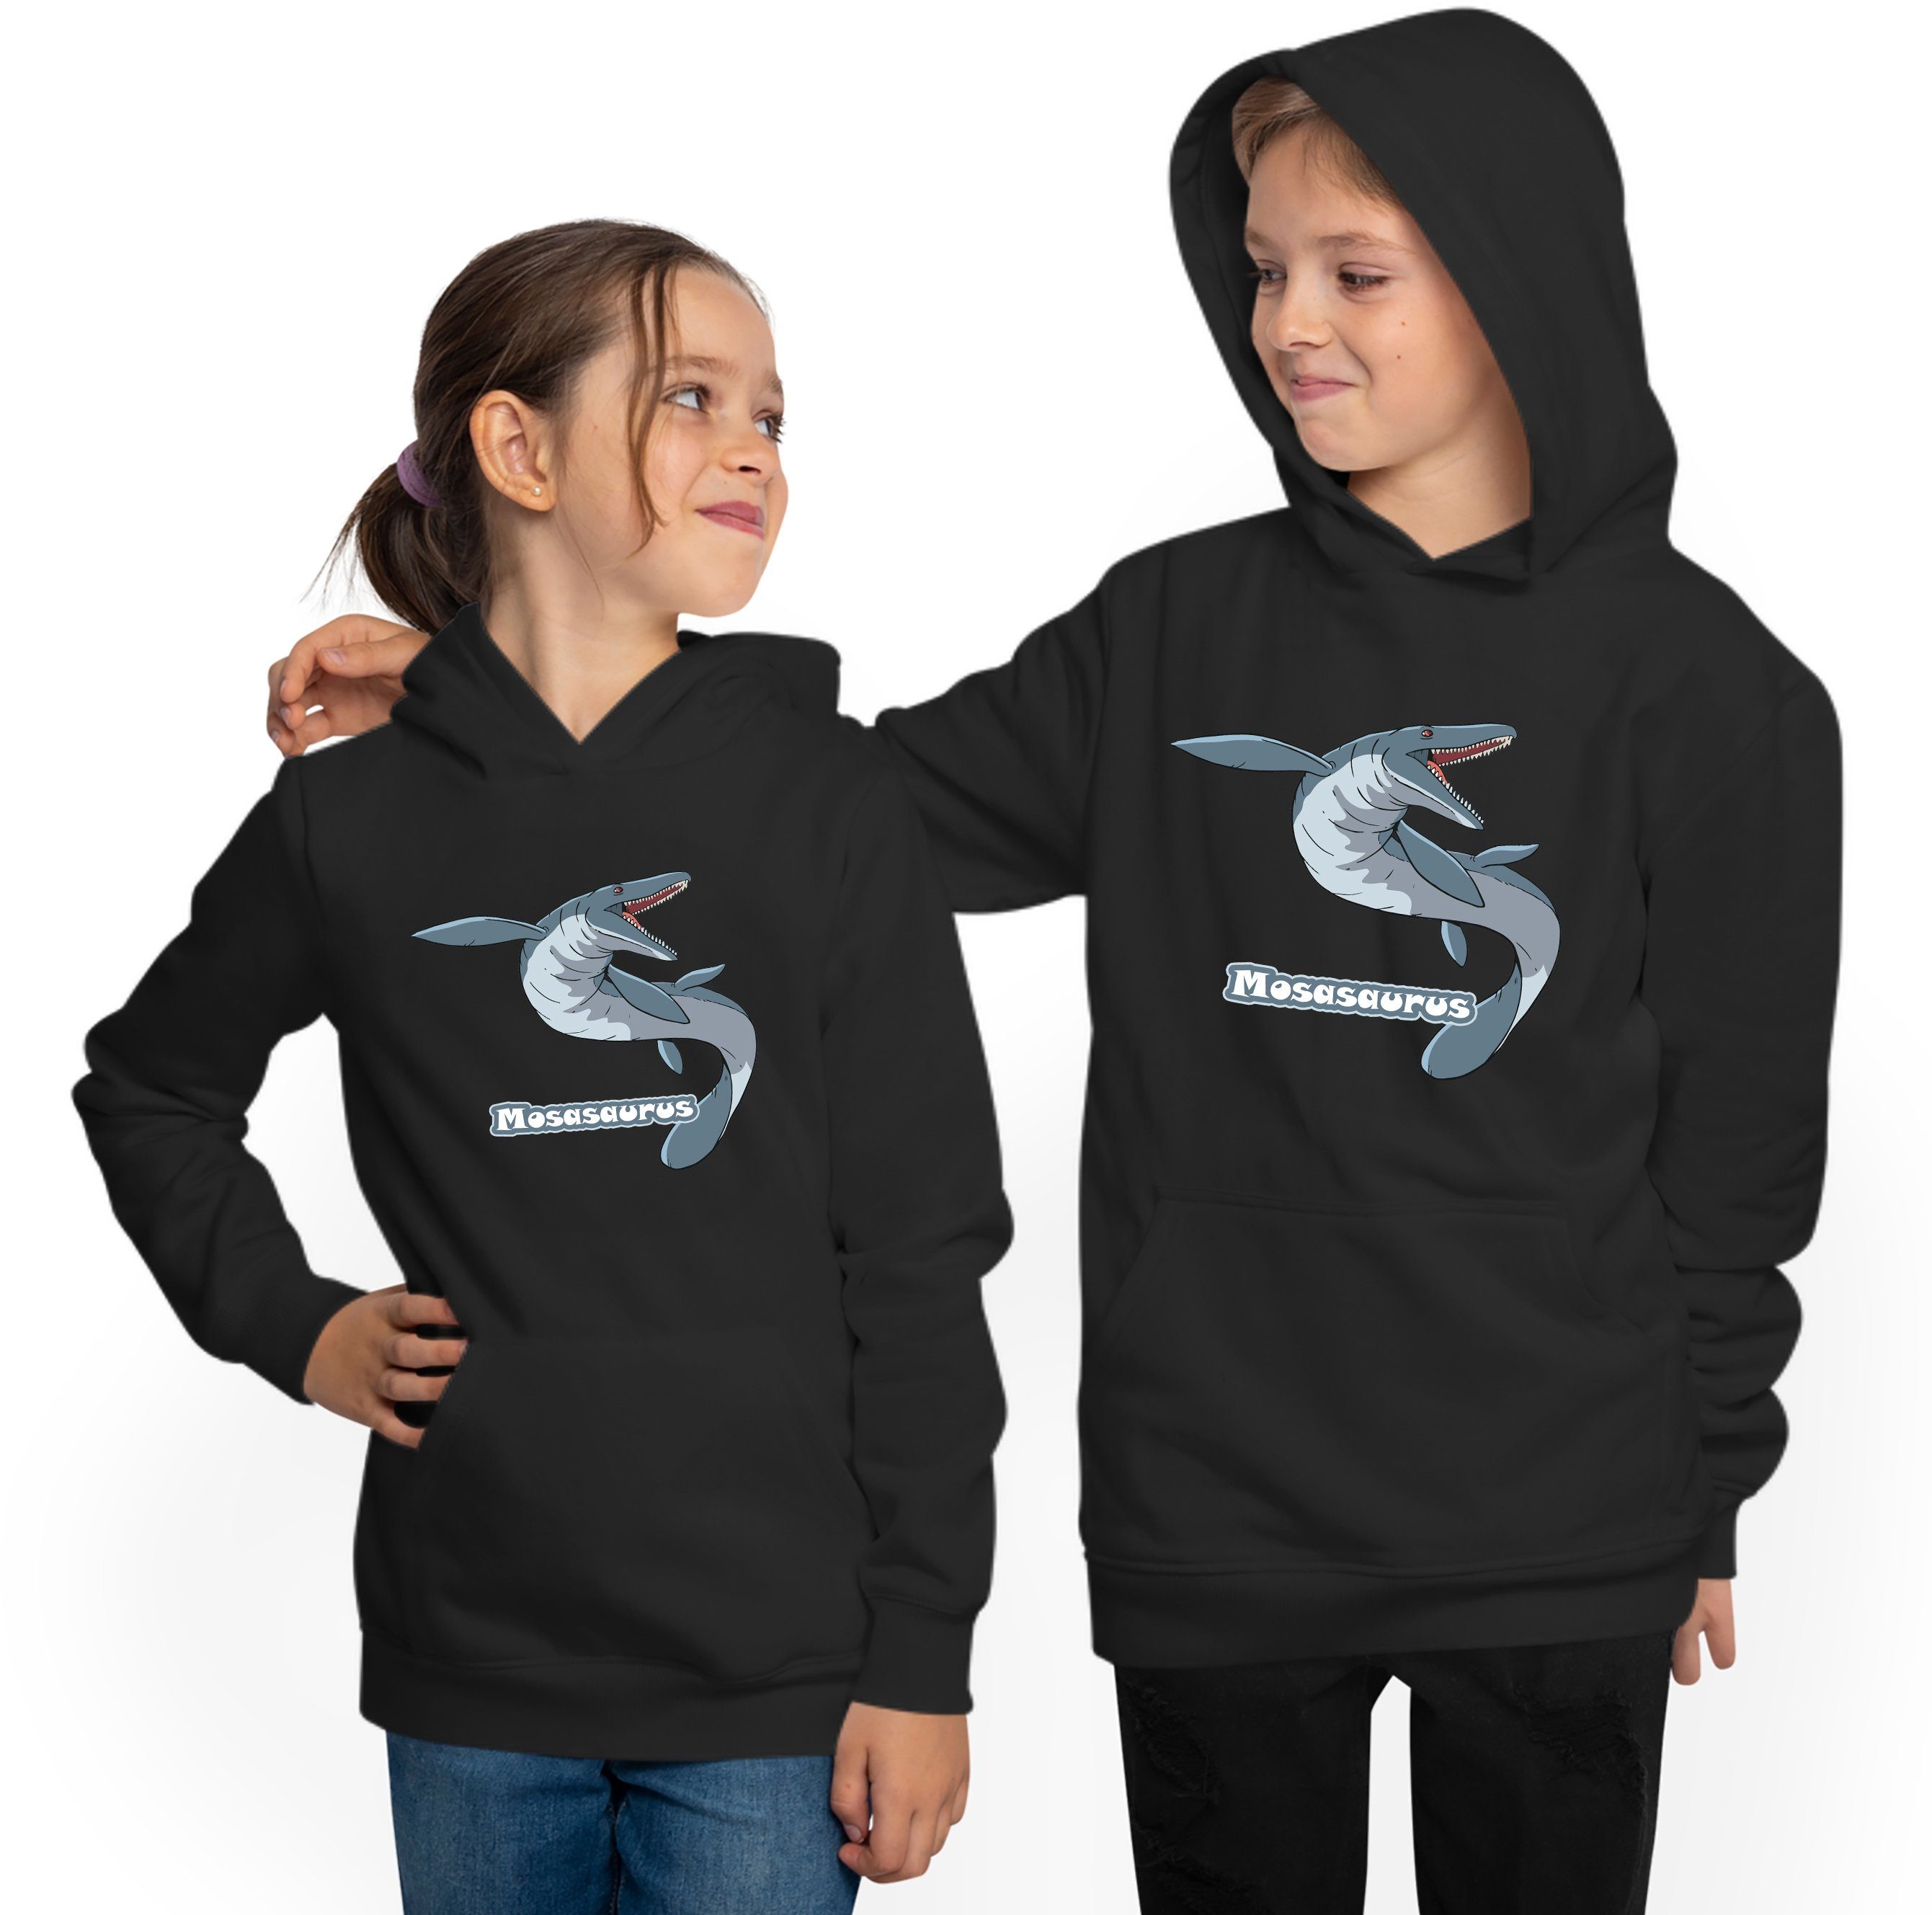 MyDesign24 Hoodie Kinder Kapuzen - Mit i51 Aufdruck, Mosasaurus Sweatshirt Print mit Kapuzensweater